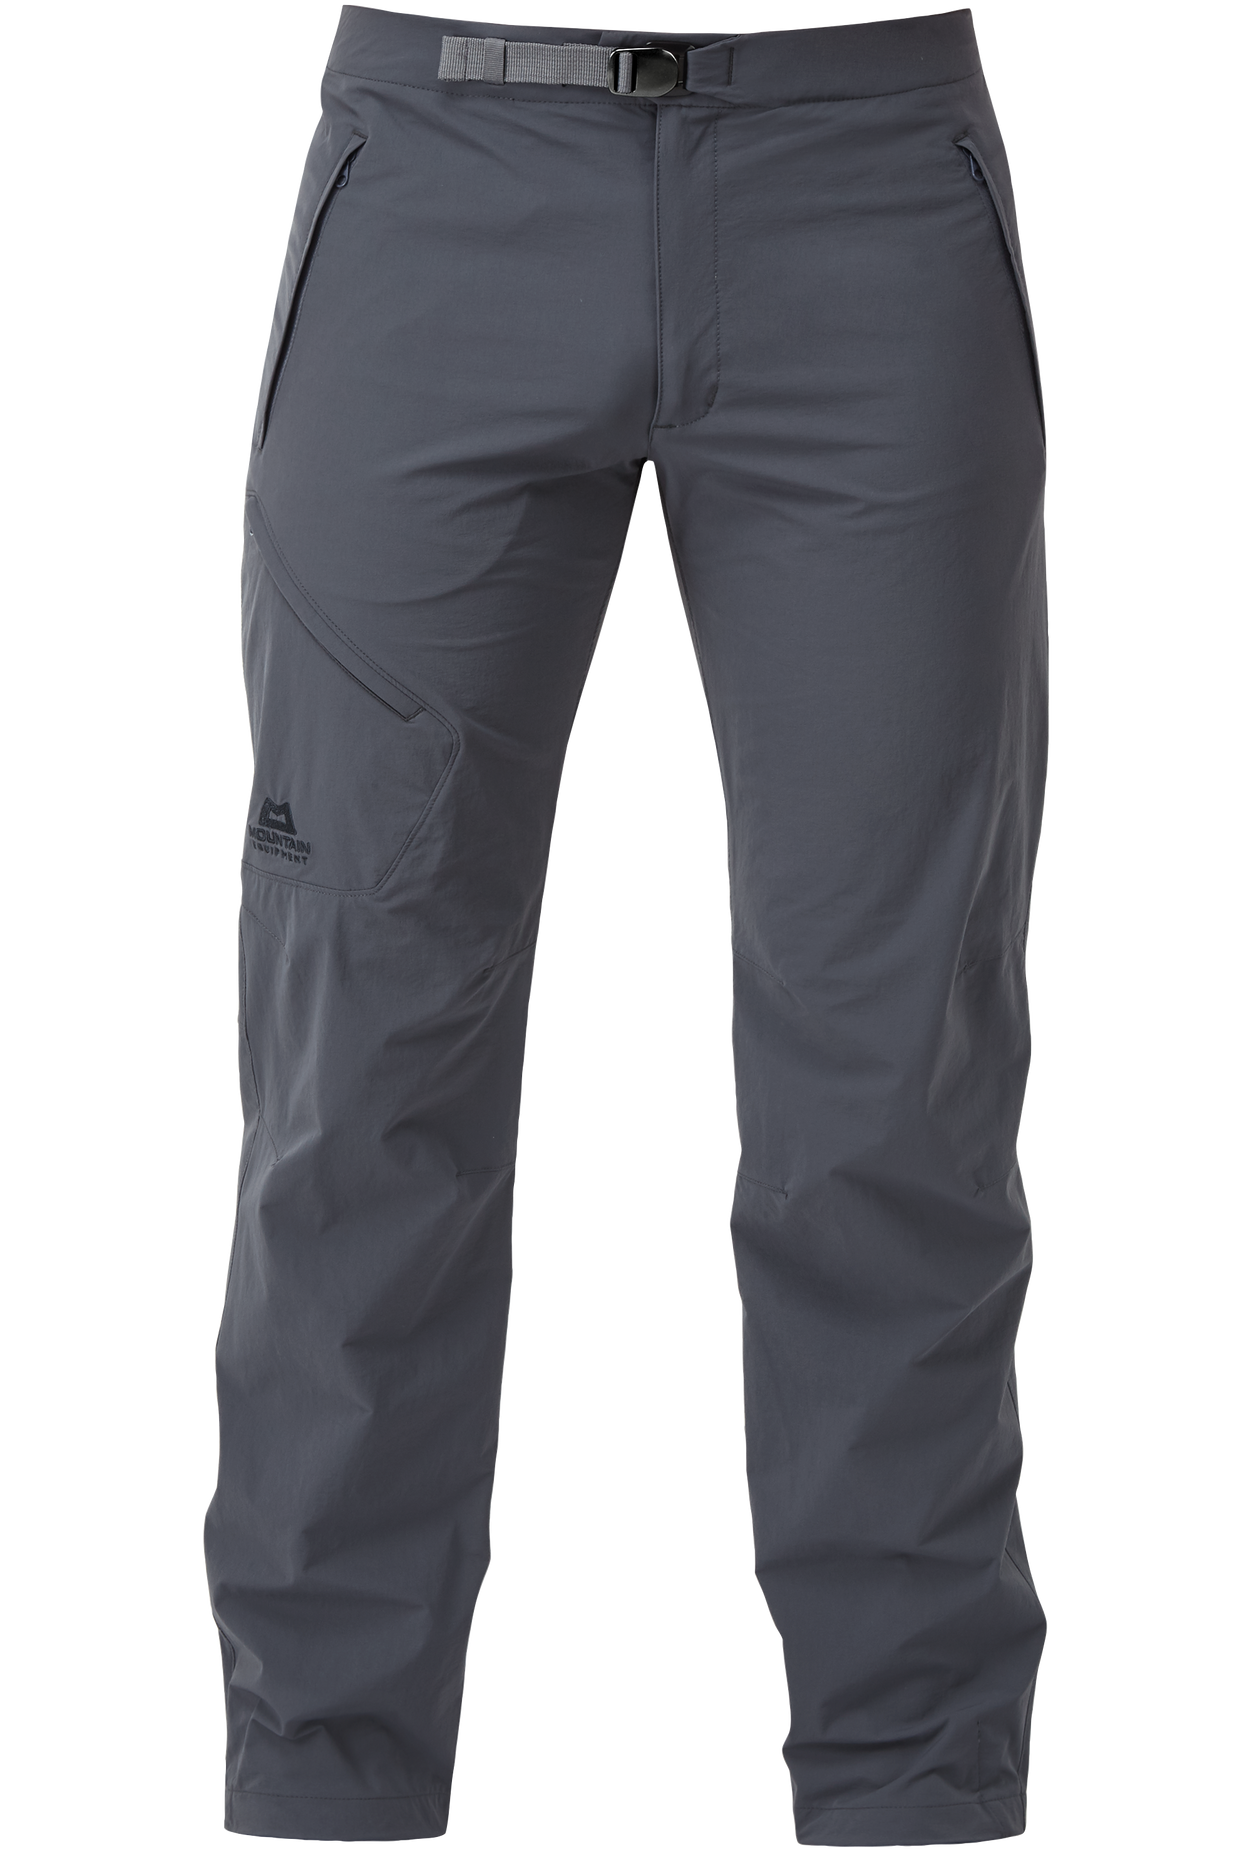 Mountain Equipment pánské softshellové kalhoty Comici Pant - zkrácené Barva: Ombre Blue, Velikost: 30/S